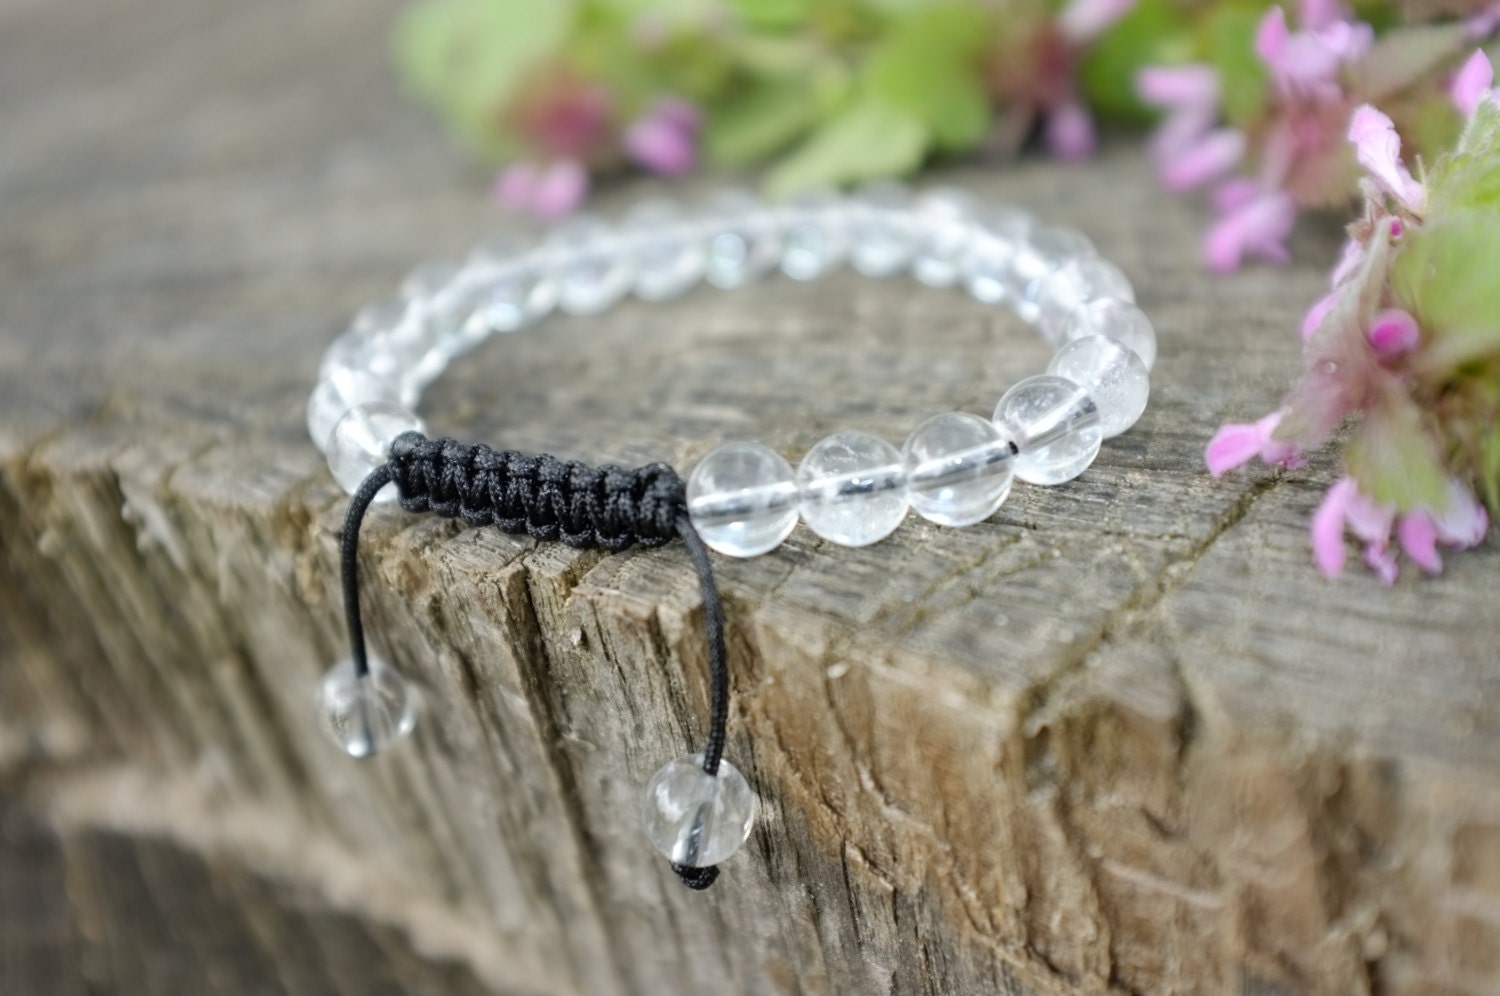 Bracelet en cristal de mode simple femmes - Achat / Vente bracelet